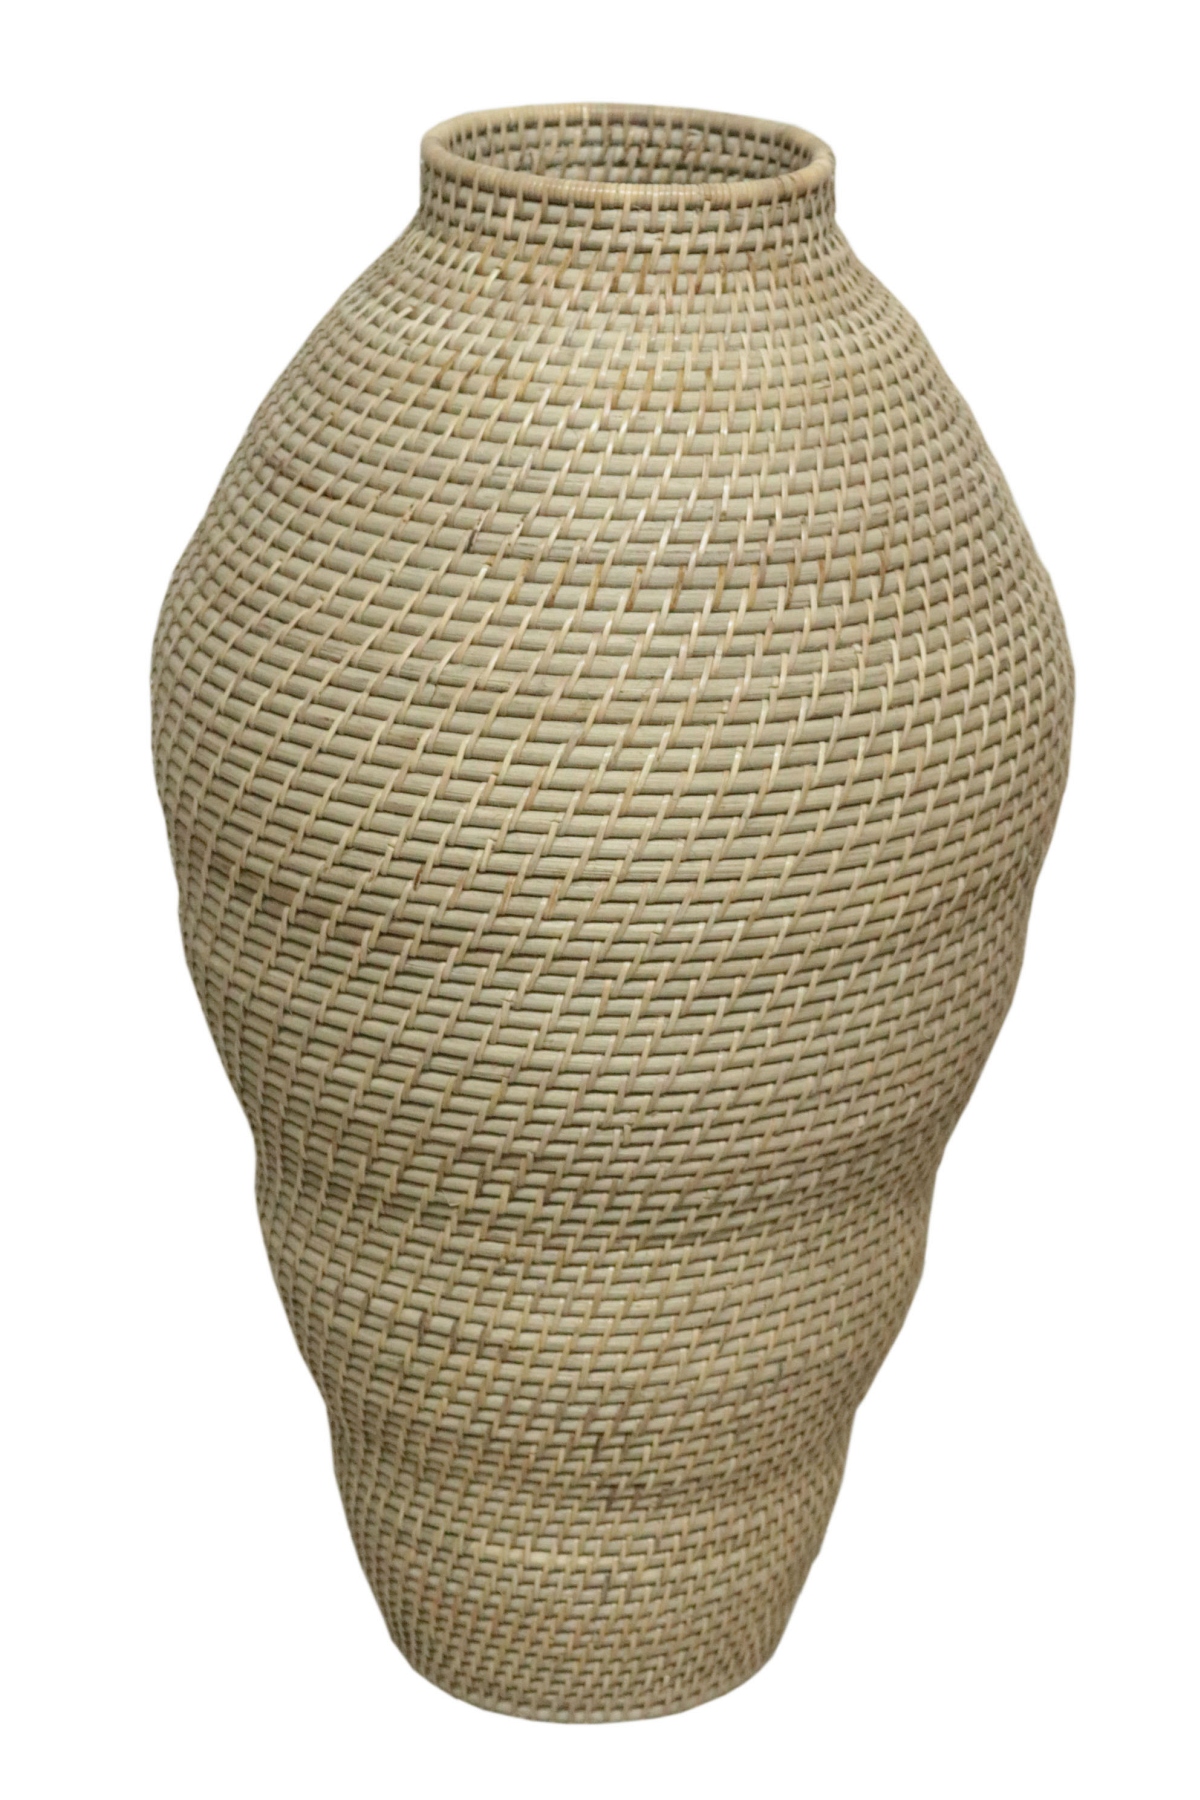 Ratanová váza Lombokon-vysoká natural | RYCHLÉ DODÁNÍ